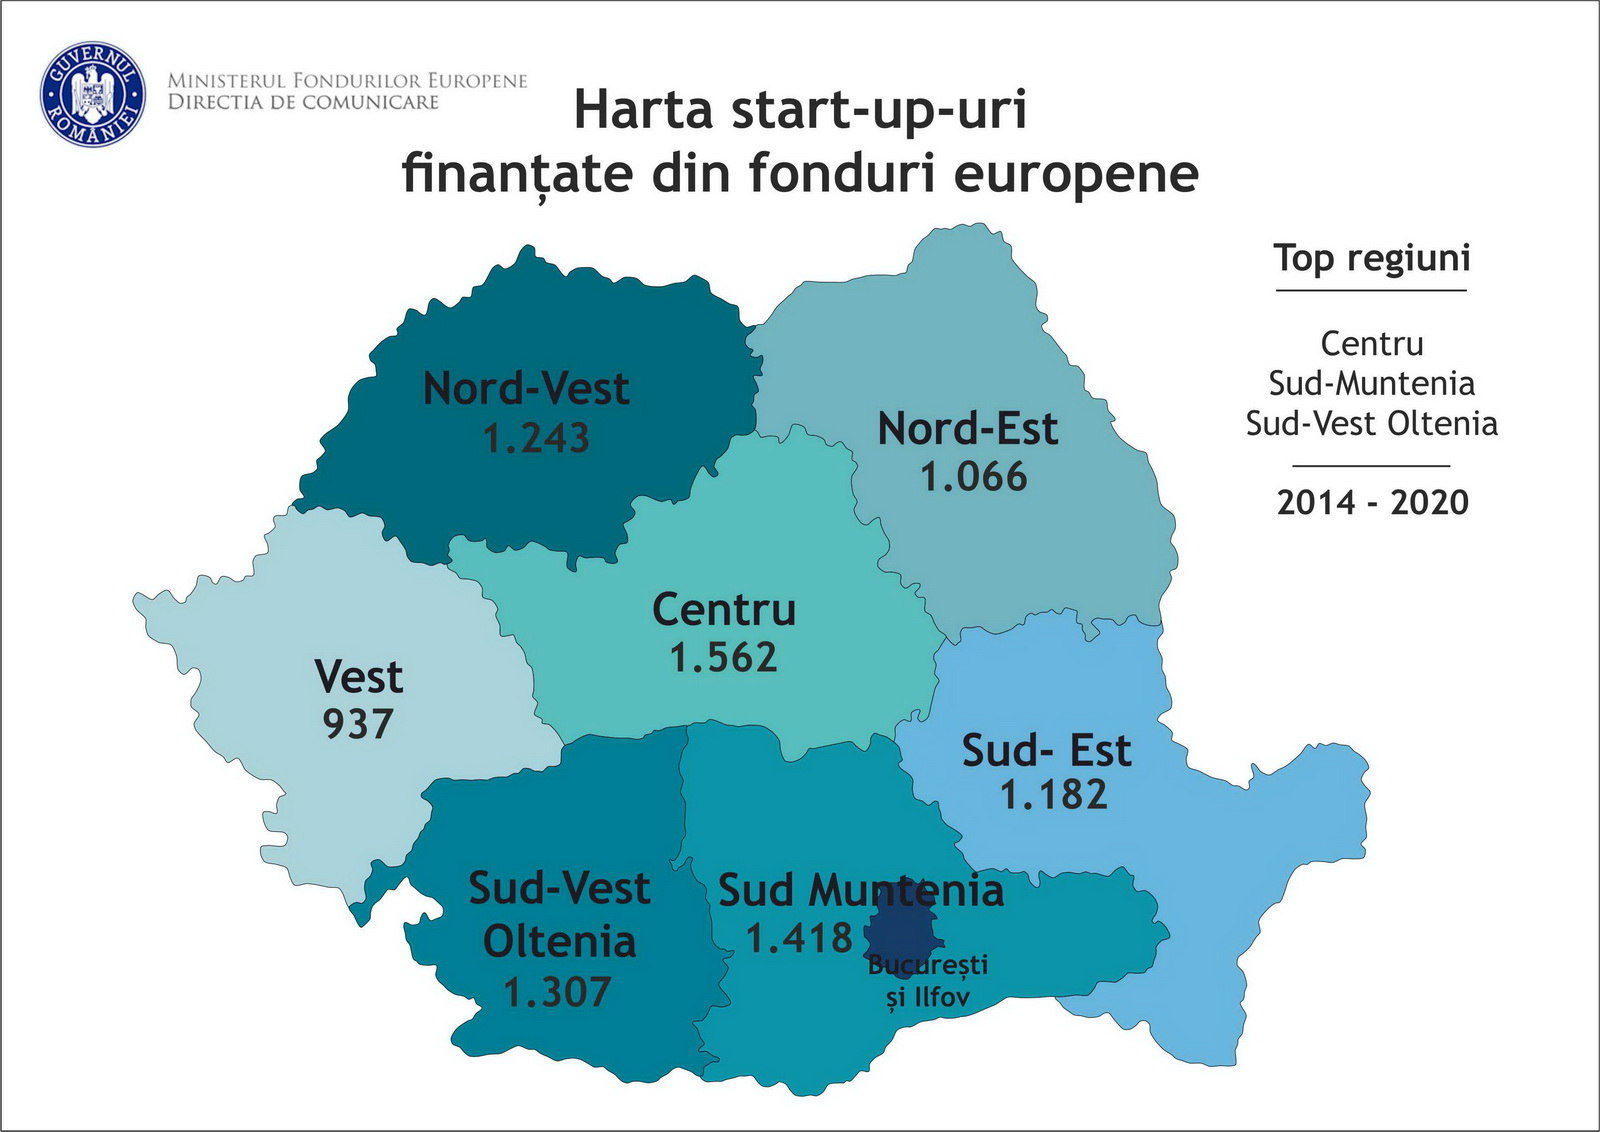 Peste 8.700 start-up-uri au fost înființate din fonduri europene, 2014-2020